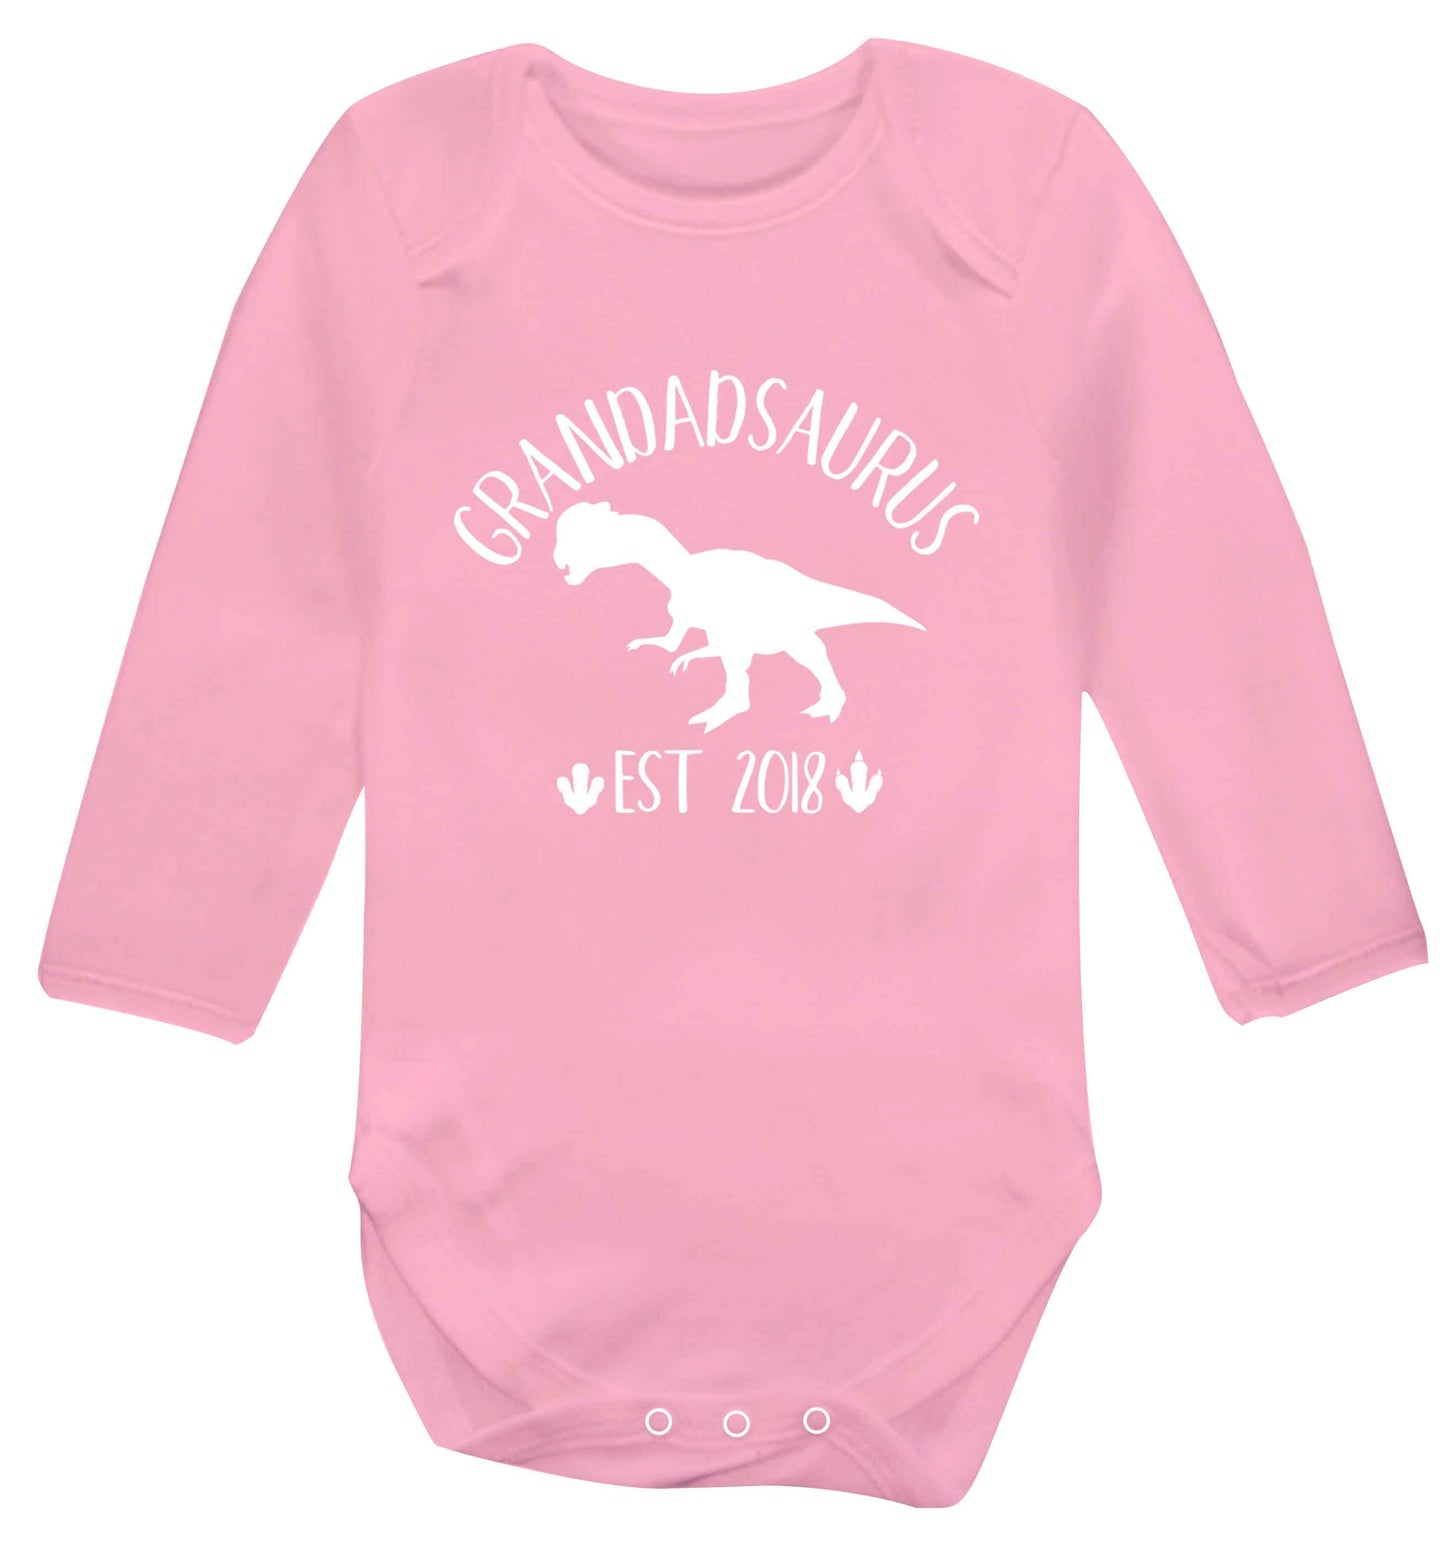 Personalised grandadsaurus since (custom date) Baby Vest long sleeved pale pink 6-12 months